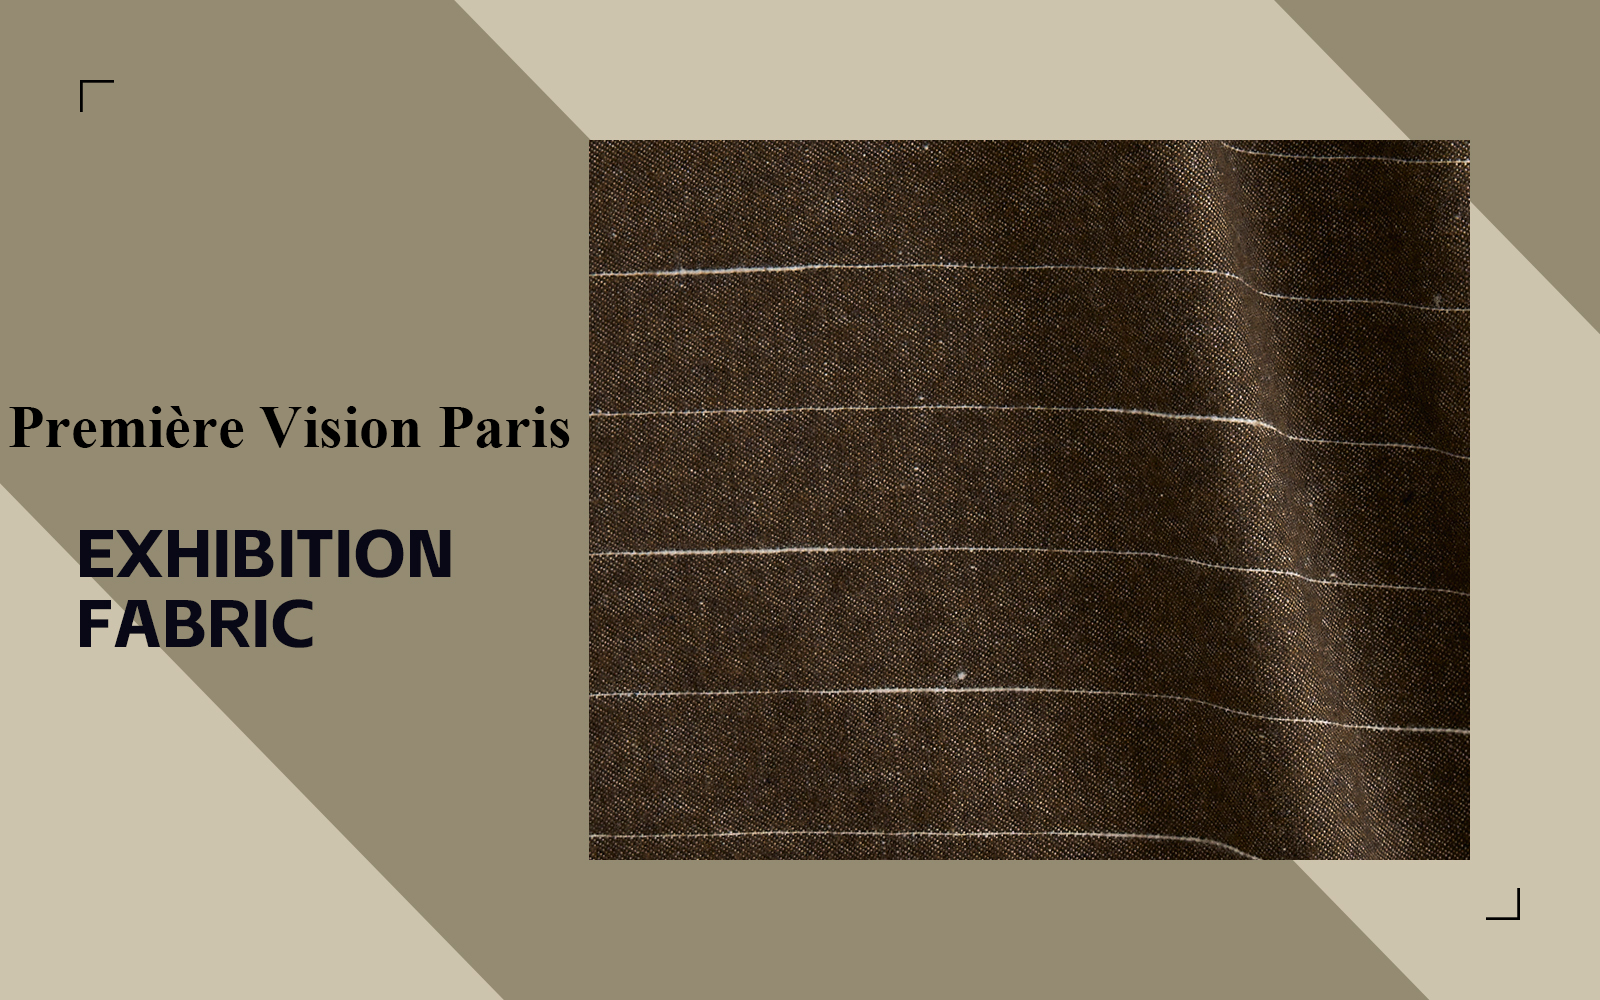 Cotton-linen -- The Fabric Analysis of Première Vision Paris